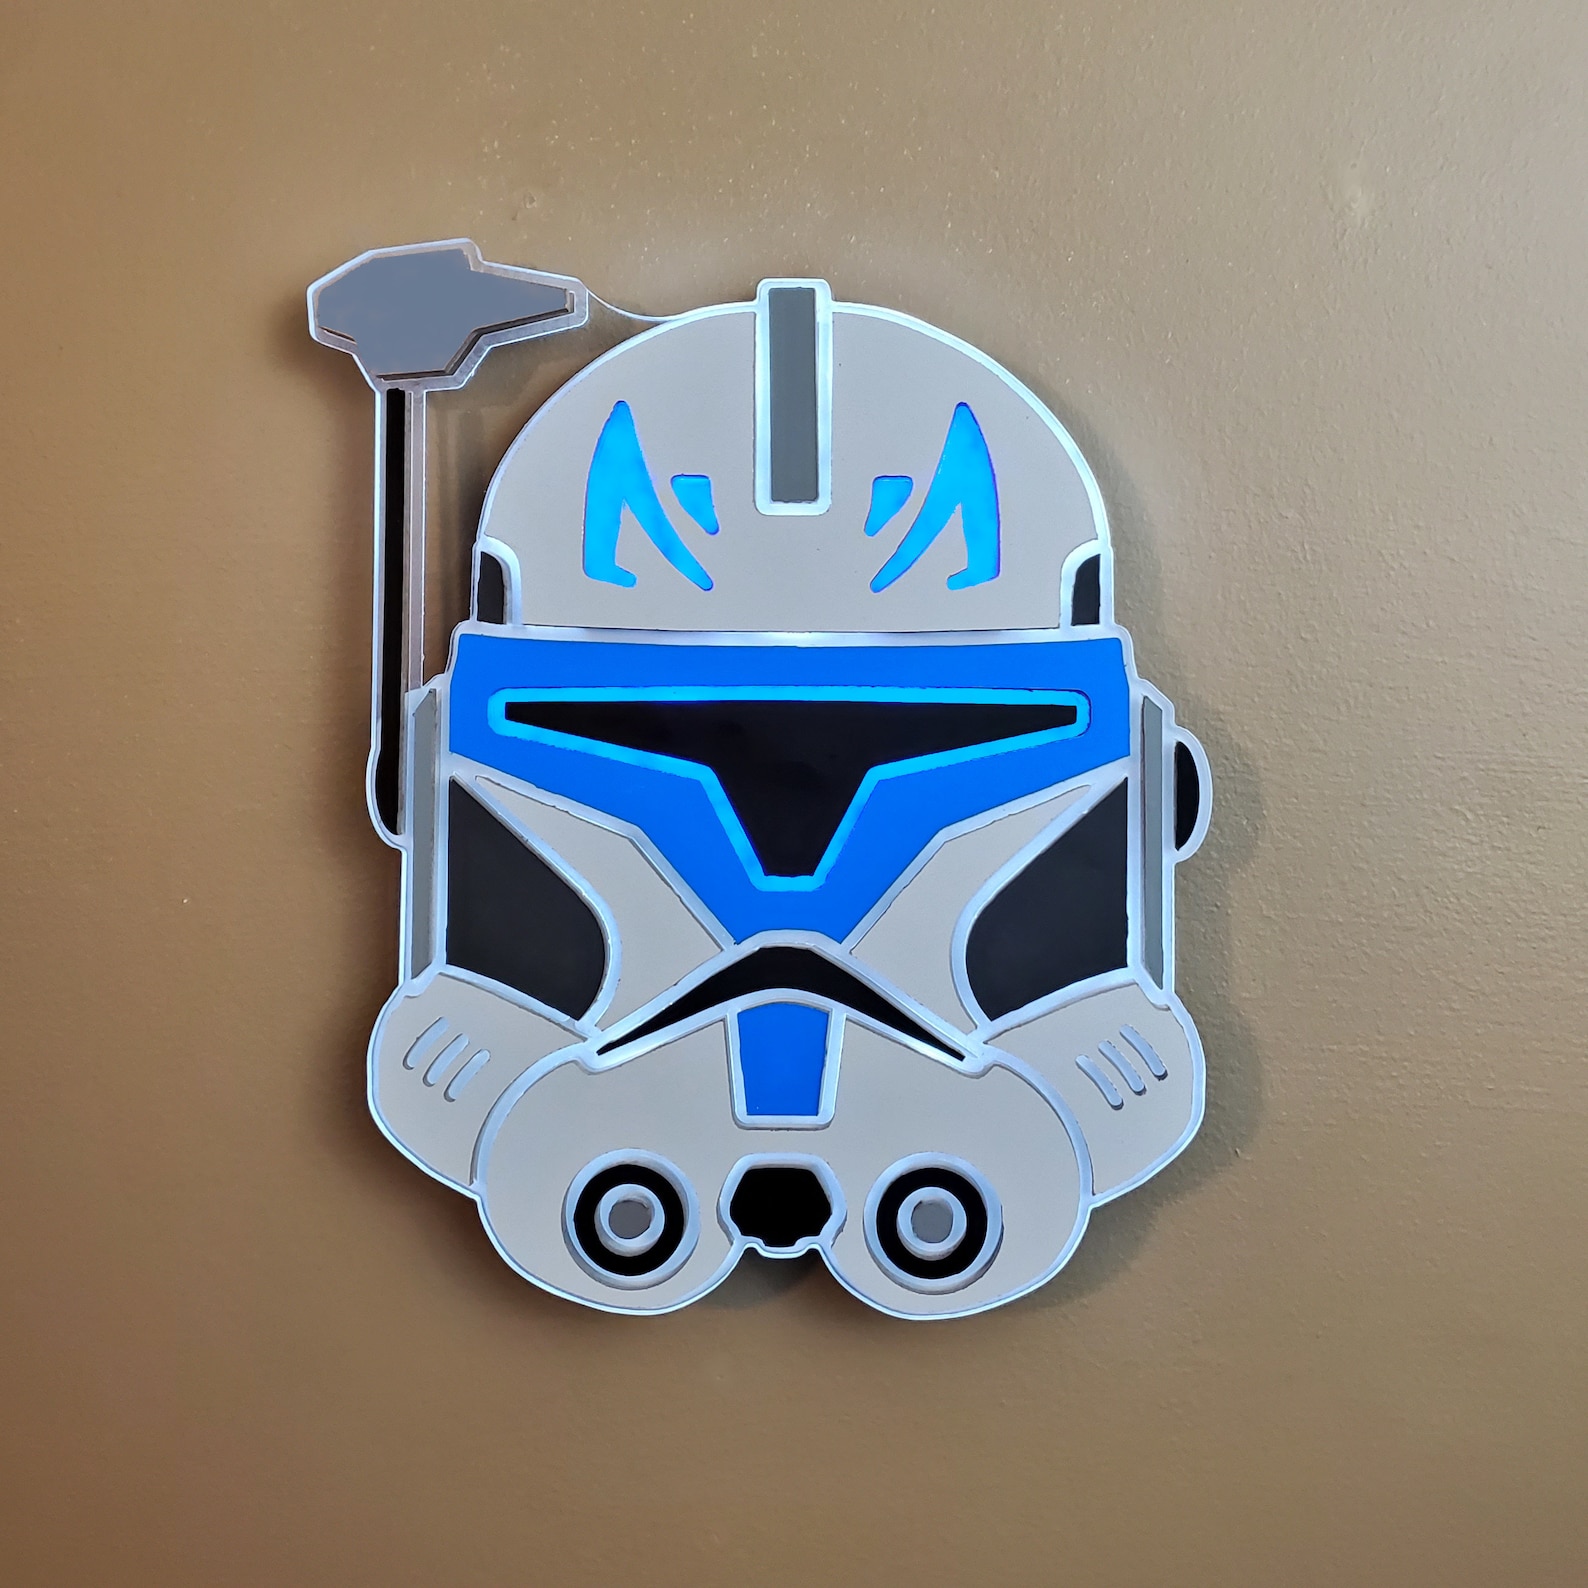 SW Captain Rex's Helmet Neon LED Light Wall Decor Sign 1